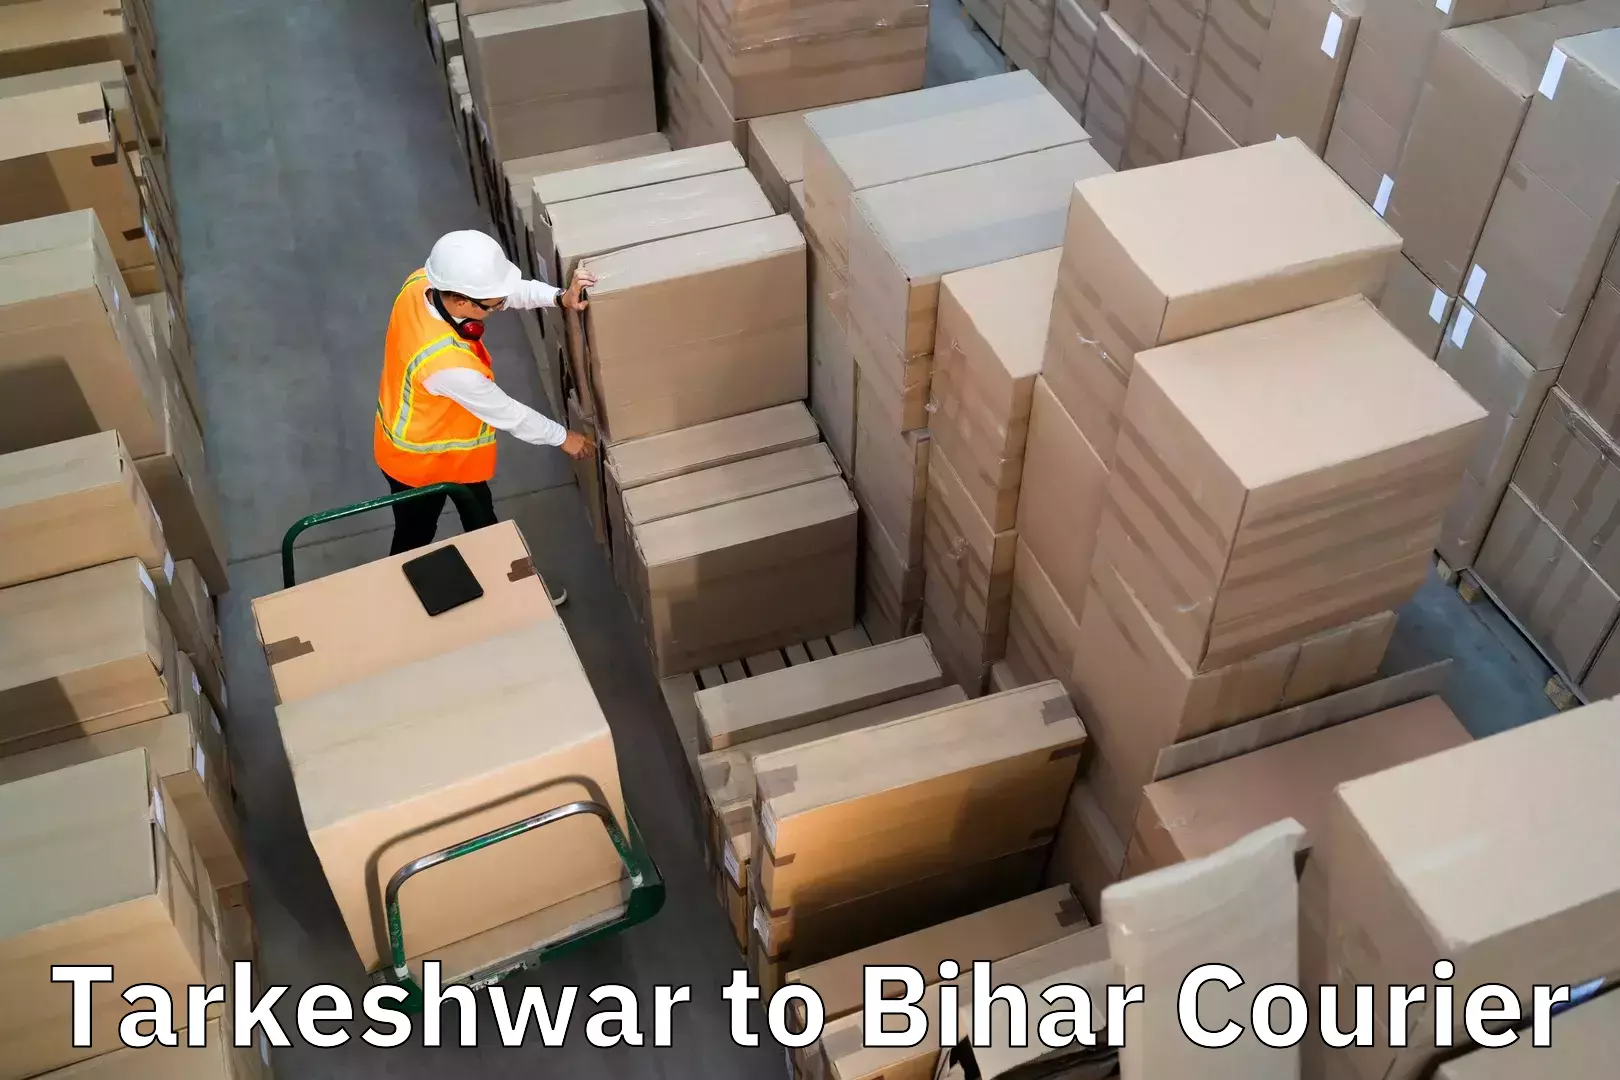 Baggage transport professionals Tarkeshwar to Dighwara